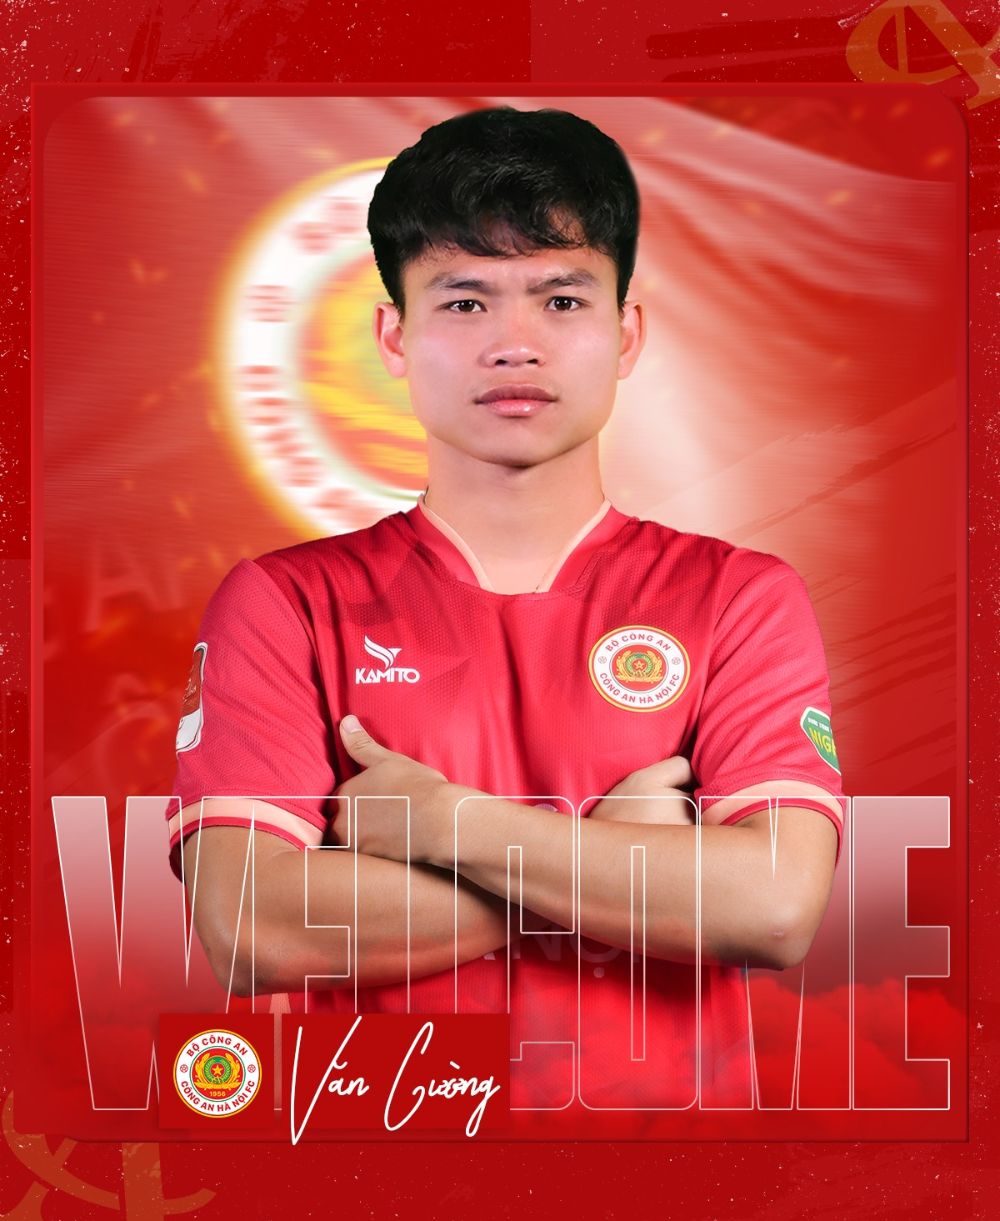 Hồ Văn Cường khoác áo số 30 tại Công an Hà Nội. Ảnh: CAHN FC